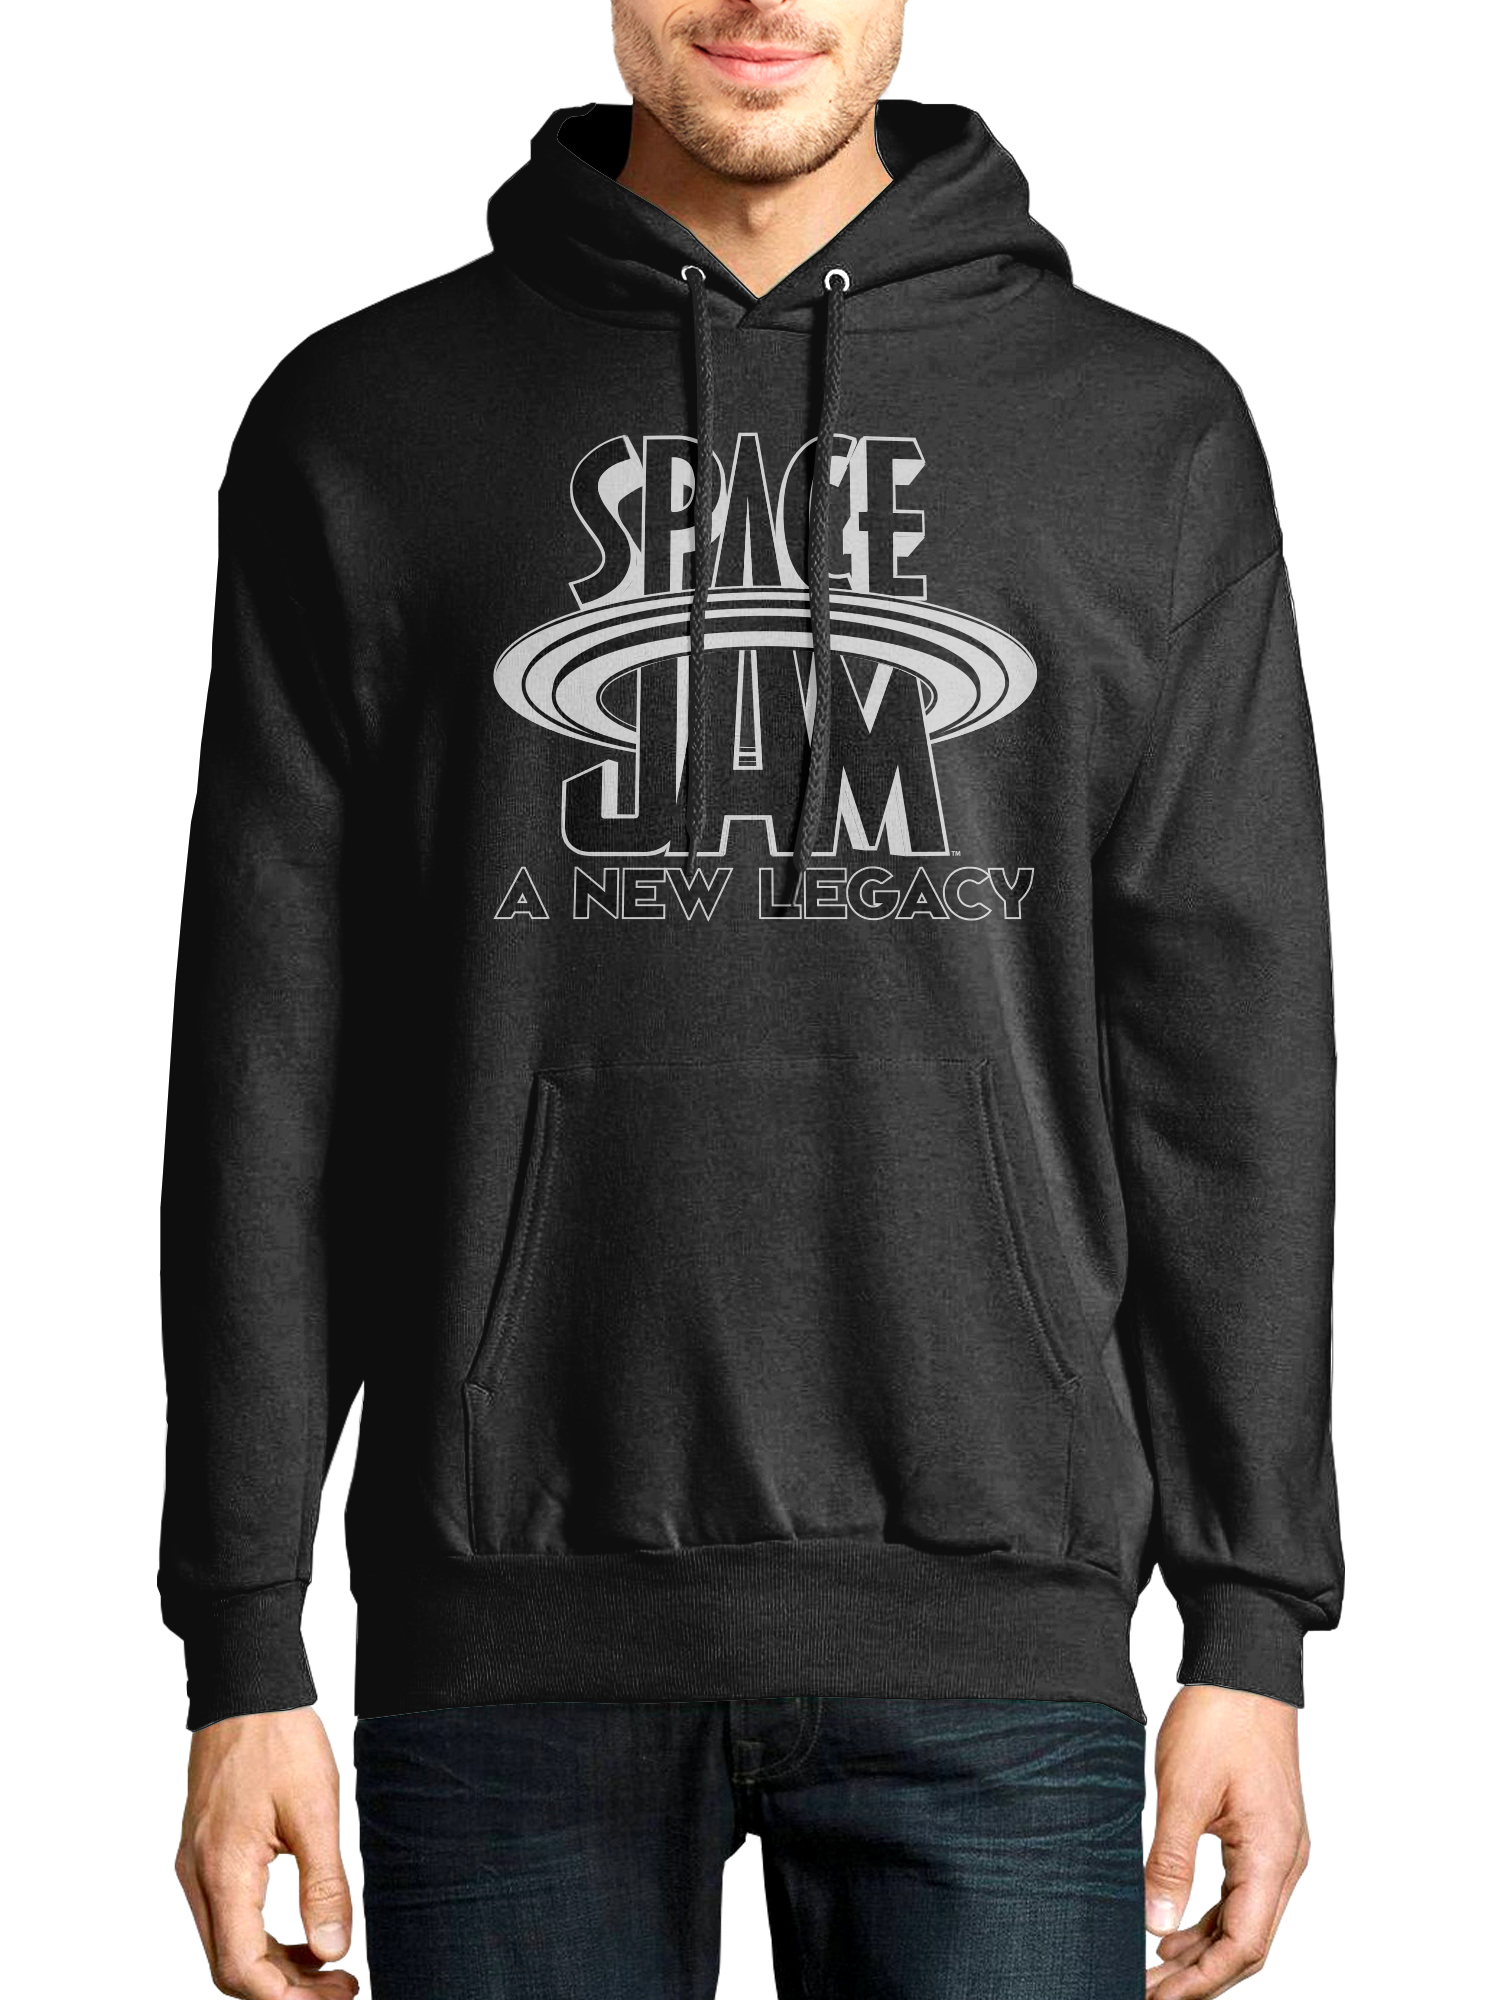 Space Jam A New Legacy Men's & Big Men's Long Sleeve Graphic Hoodie Sweatshirt, Men's Space Jam Hoodies - image 1 of 1